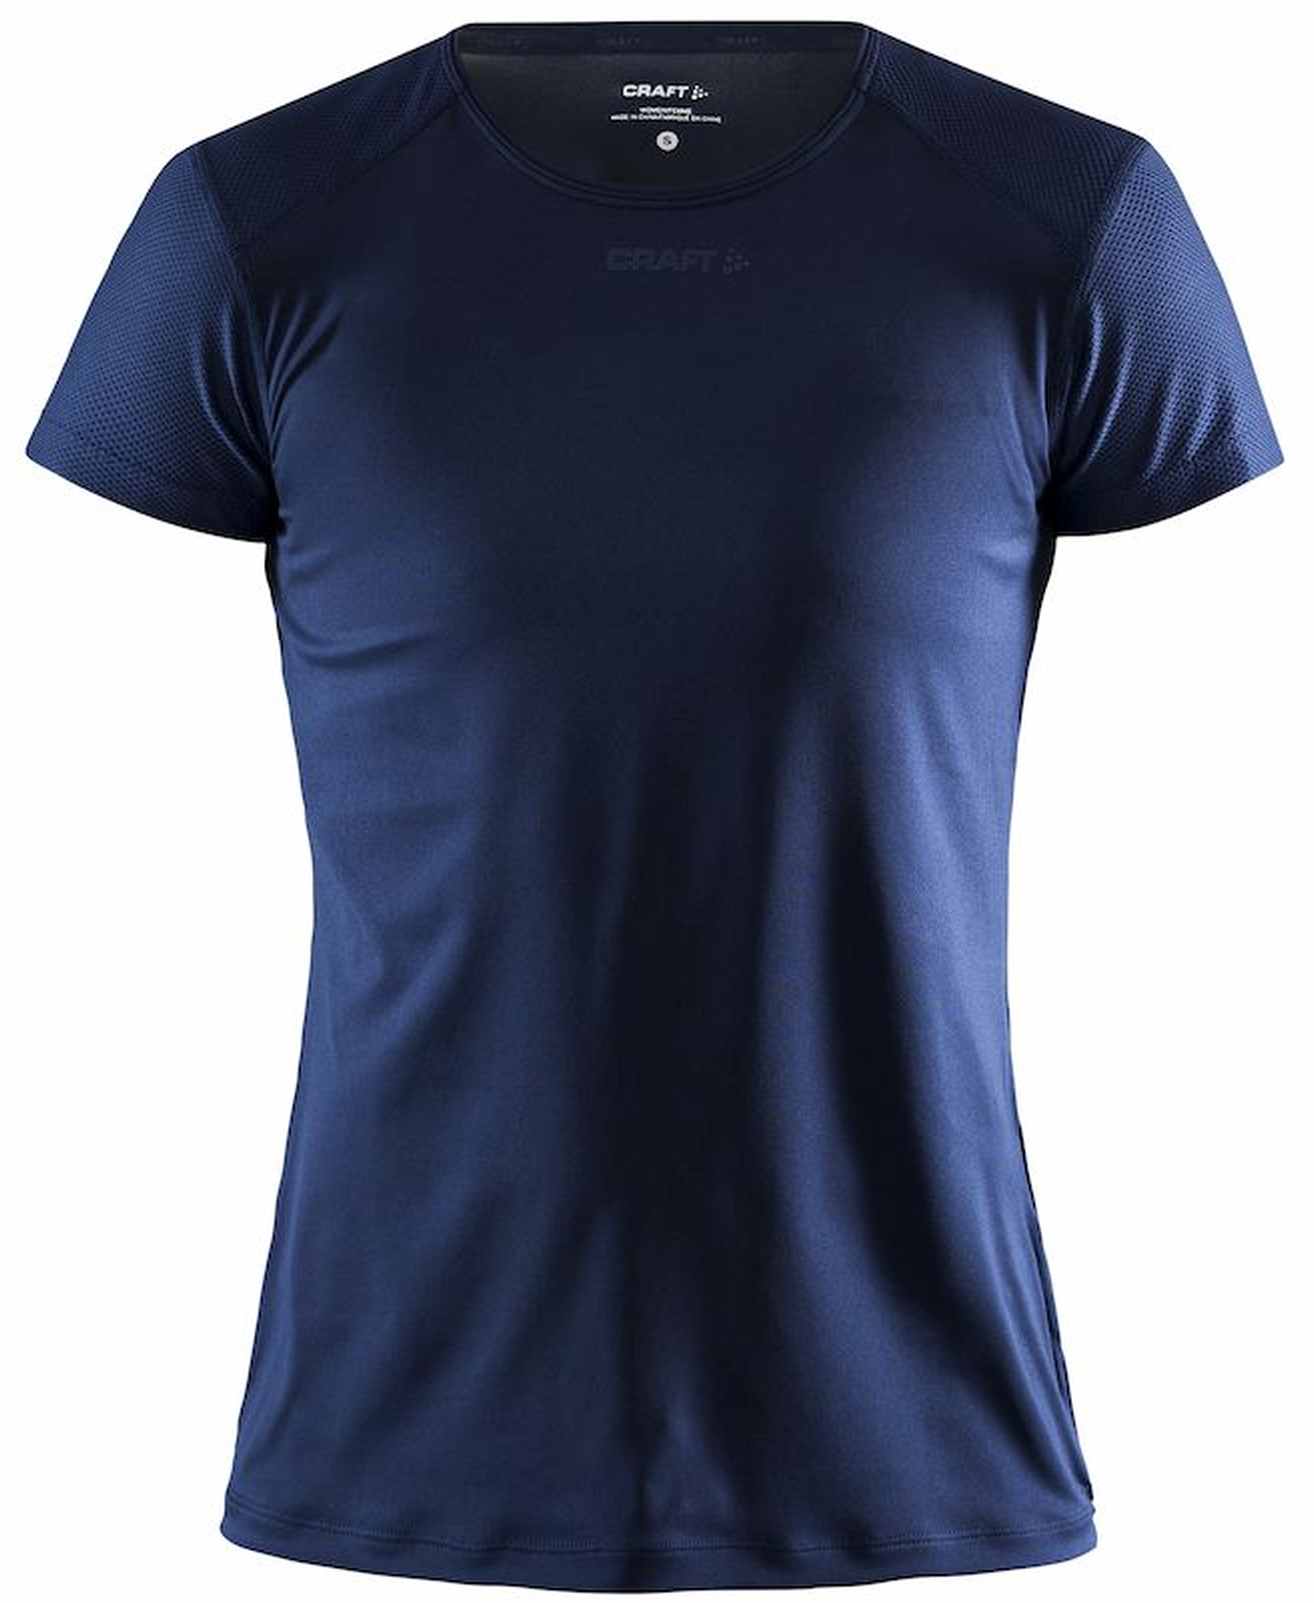 Women's functional T-shirt